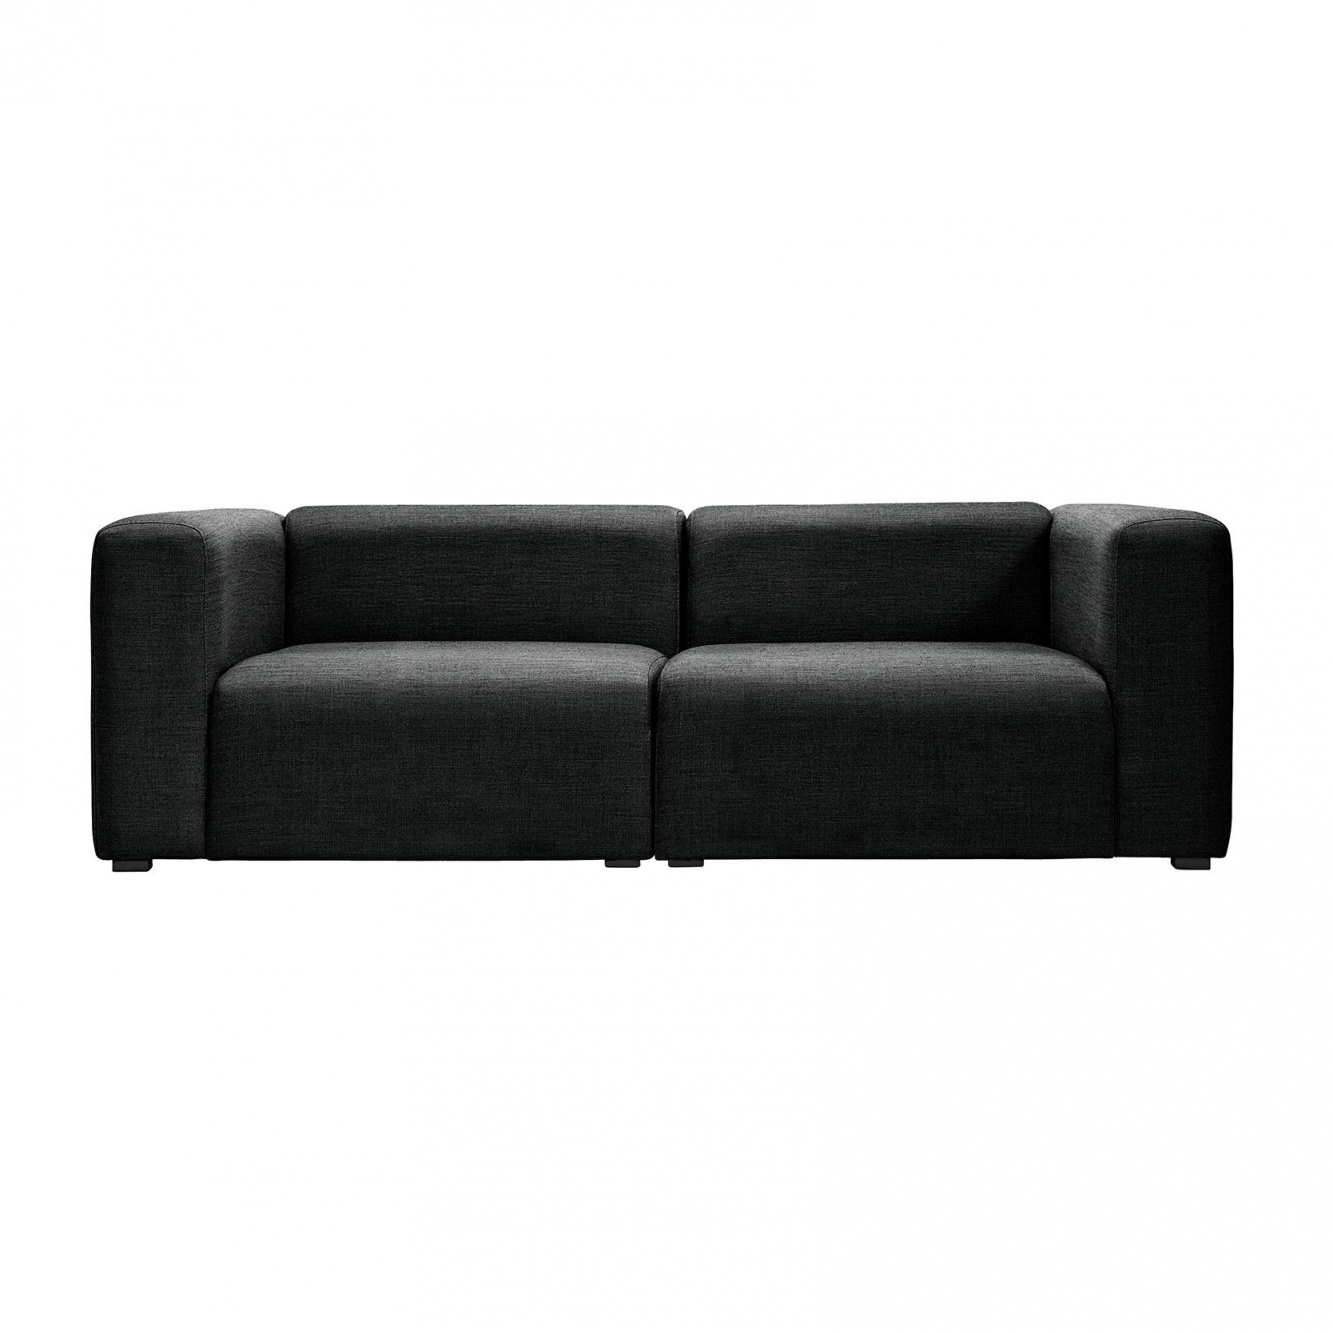 HAY - Mags 2,5-Sitzer Sofa 228x95,5x67cm - schwarz/Stoff Surface by Hay 990/BxHxT 228x67x95,5cm/Füße Kiefernholz schwarz gebeizt von HAY